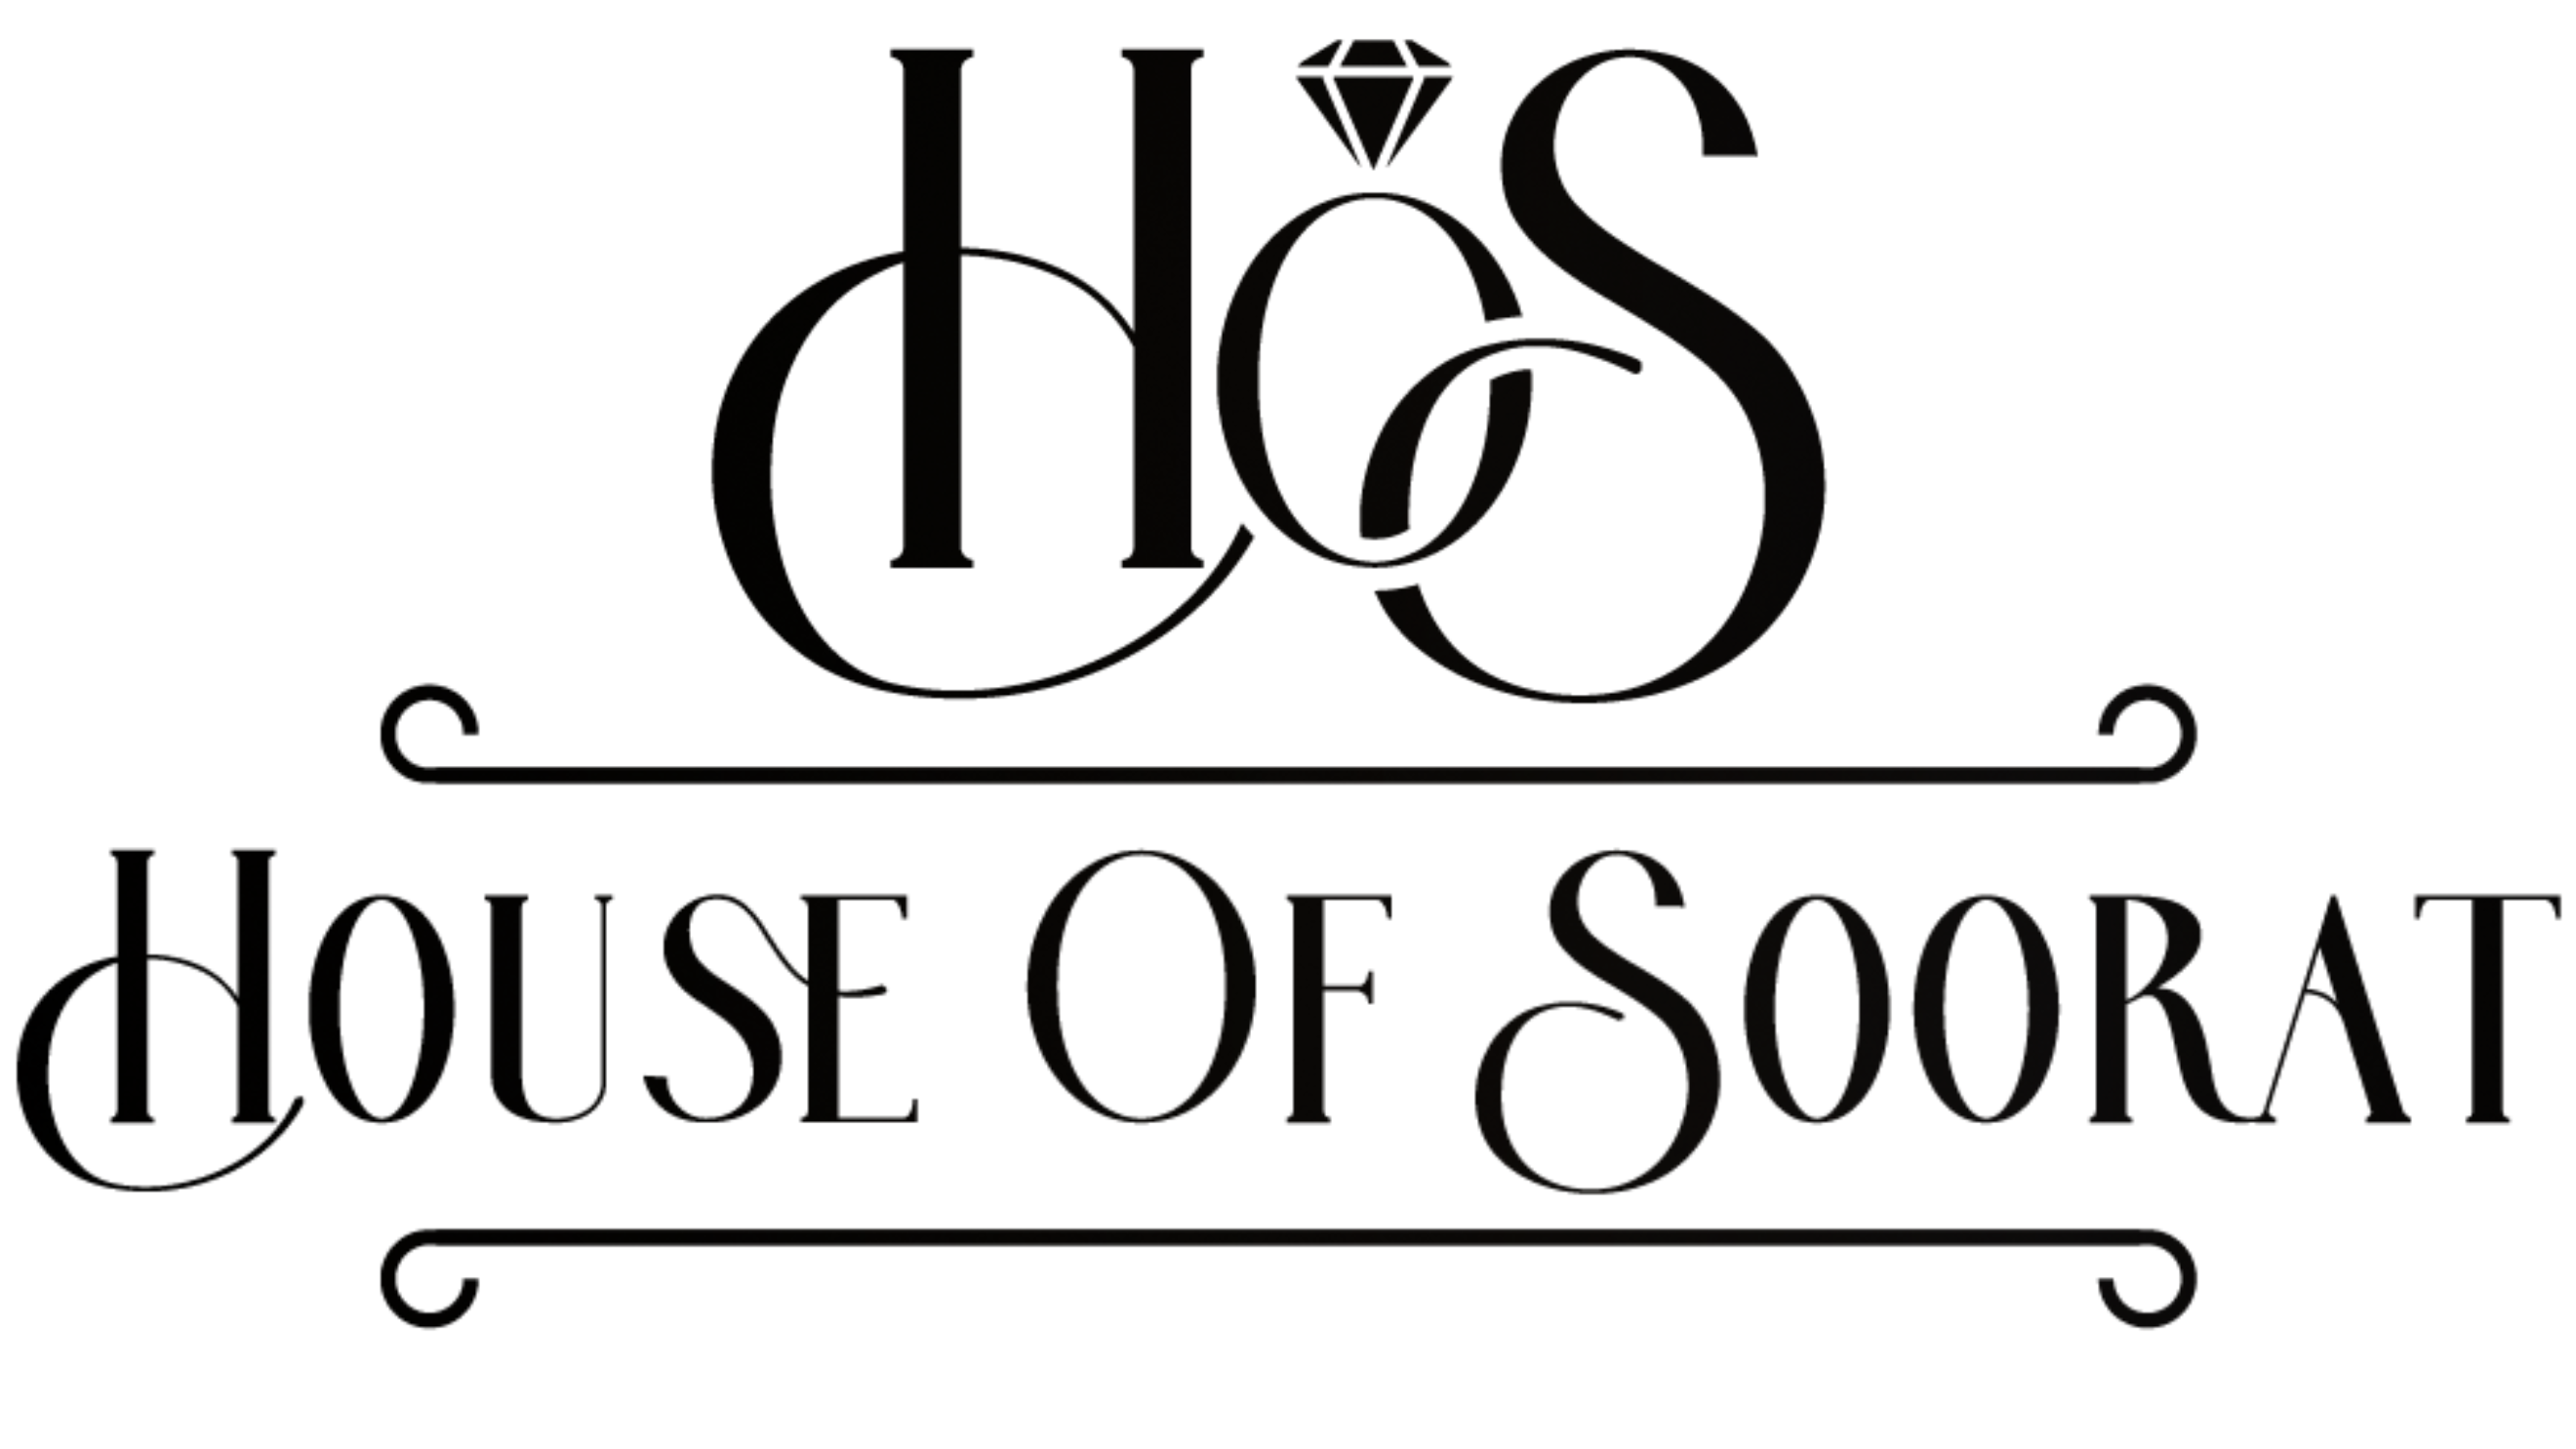 House of soorat